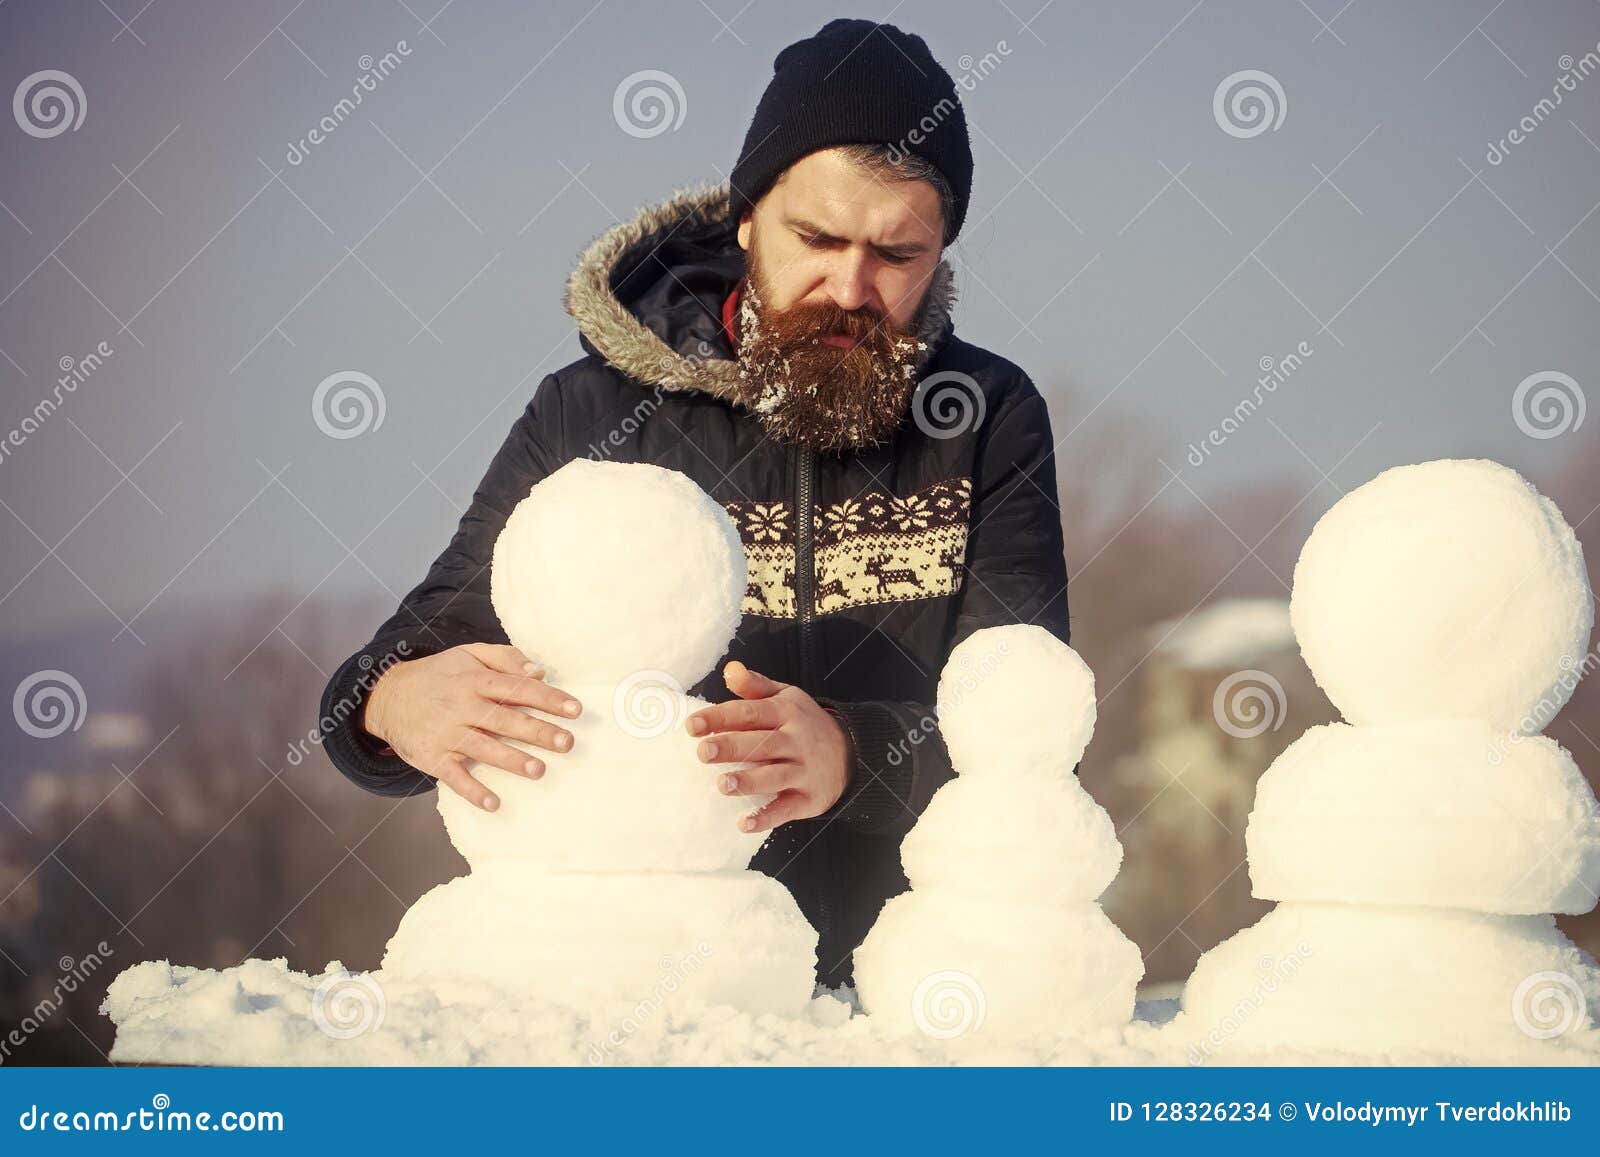 El Hombre De La En Sombrero Con La Barba Larga Hace El Muñeco De Nieve Foto de archivo - de emociones, blanco: 128326234